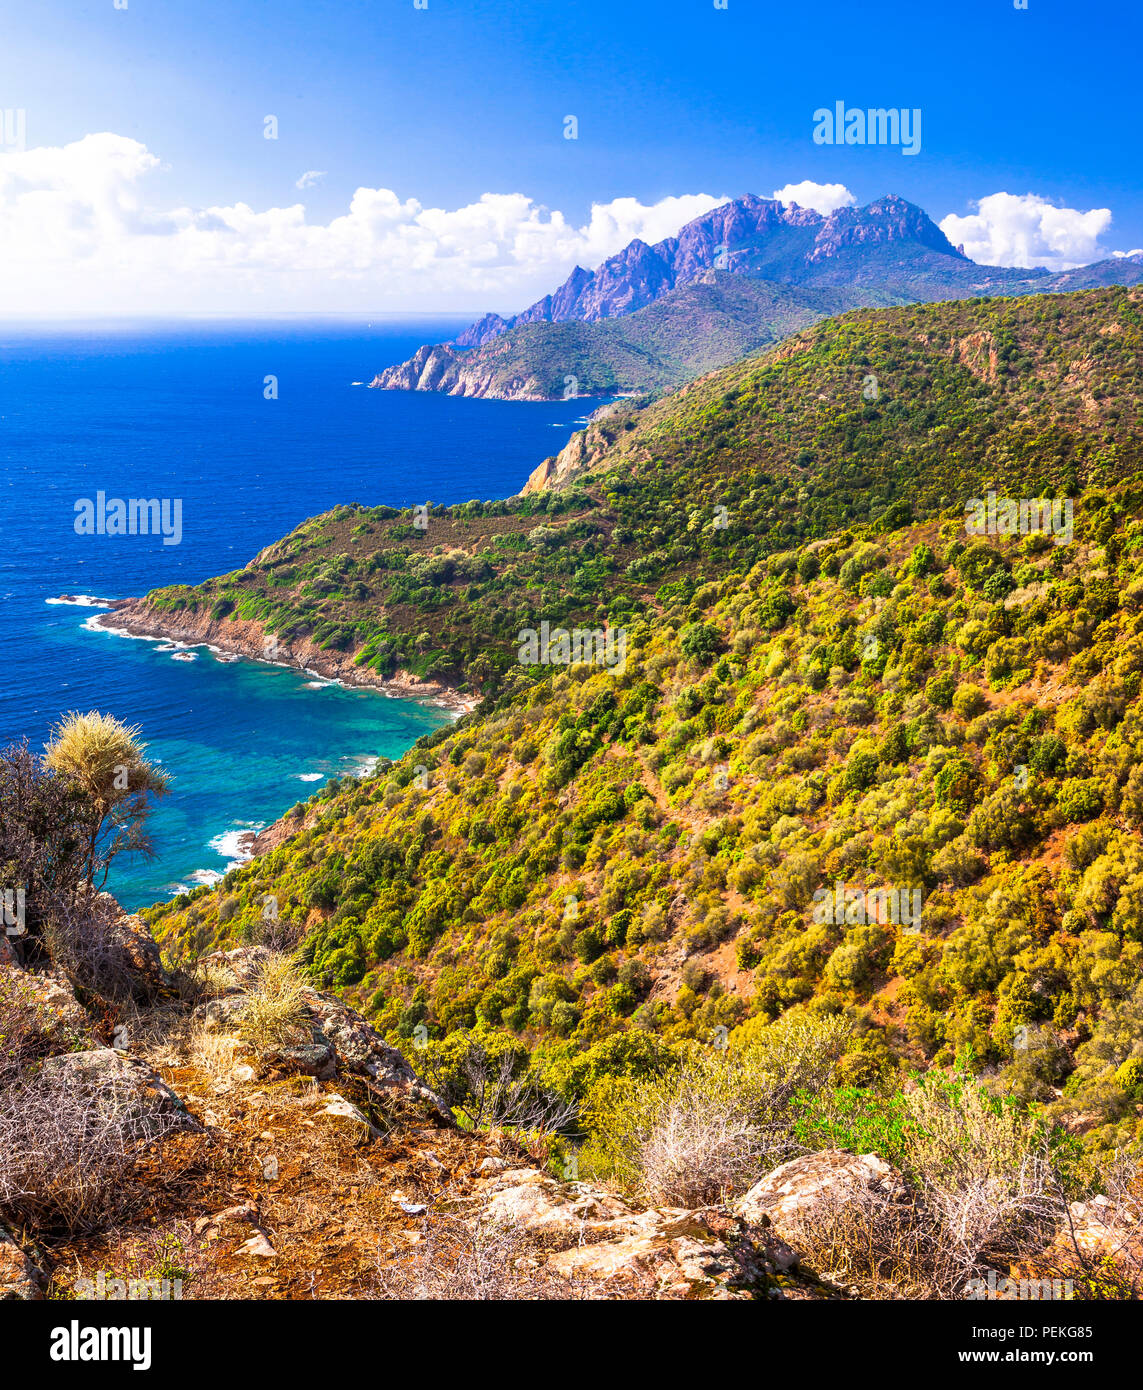 Paysage panoramique impressionnant,avec vue sur mer et montagne,Calanques,Corse,France. Banque D'Images